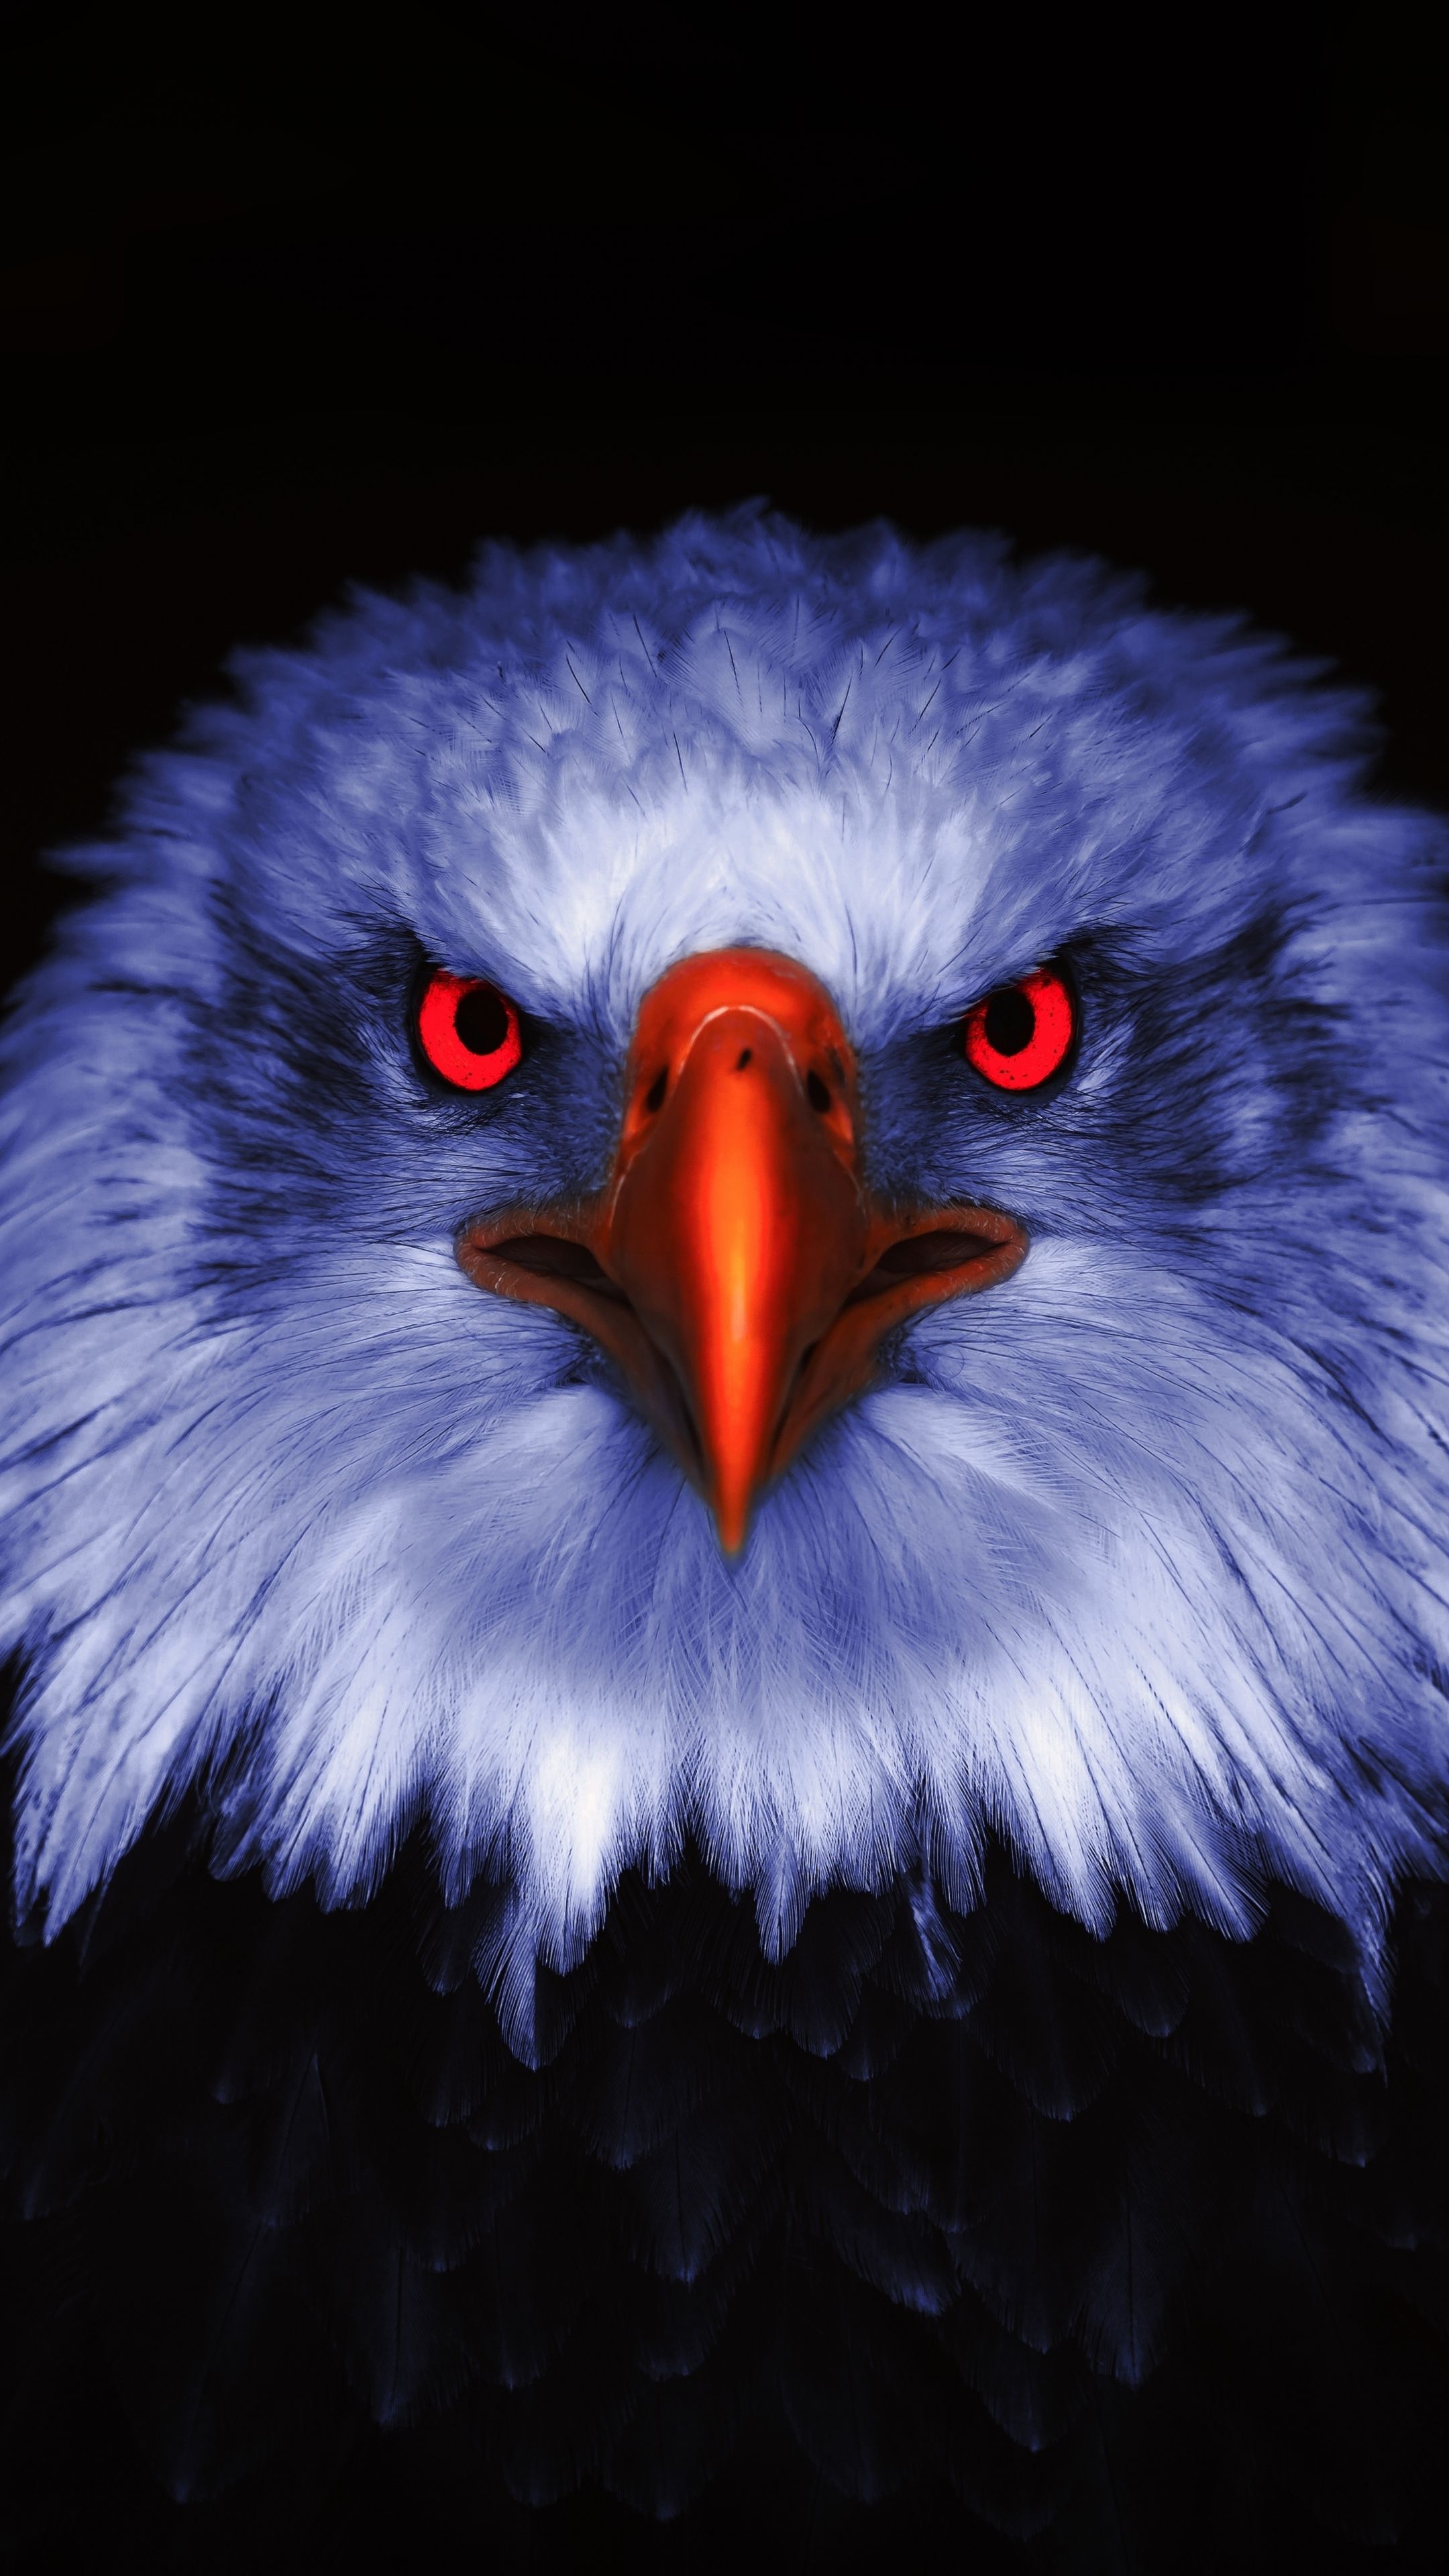 Eagle, Raptor, red eyes, close up wallpaper. Eagle wallpaper, Eagle image, Eagle picture